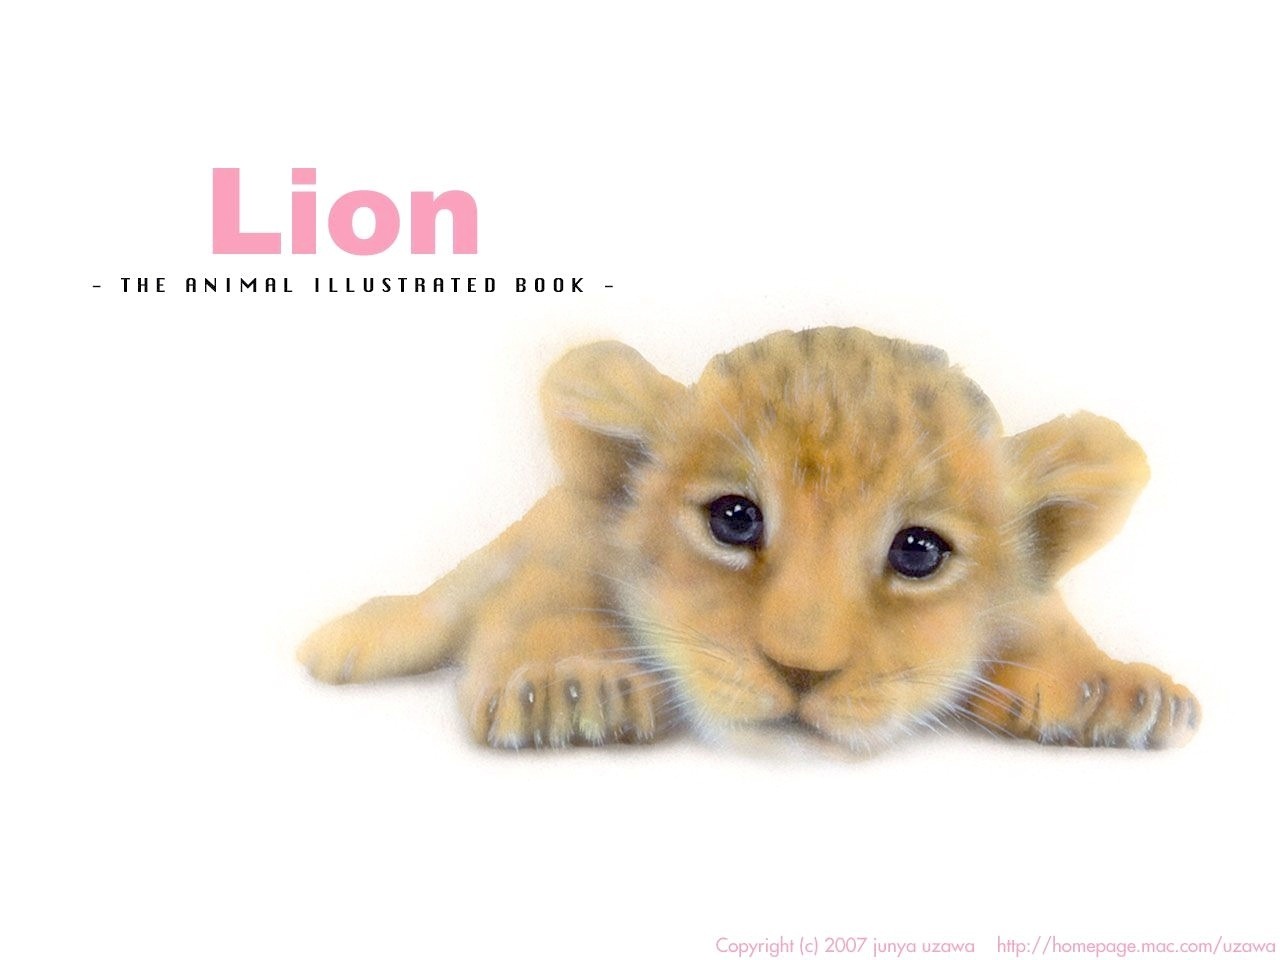 リアリズム絵画 動物の絵 動物イラスト ライオン 吠えるライオン